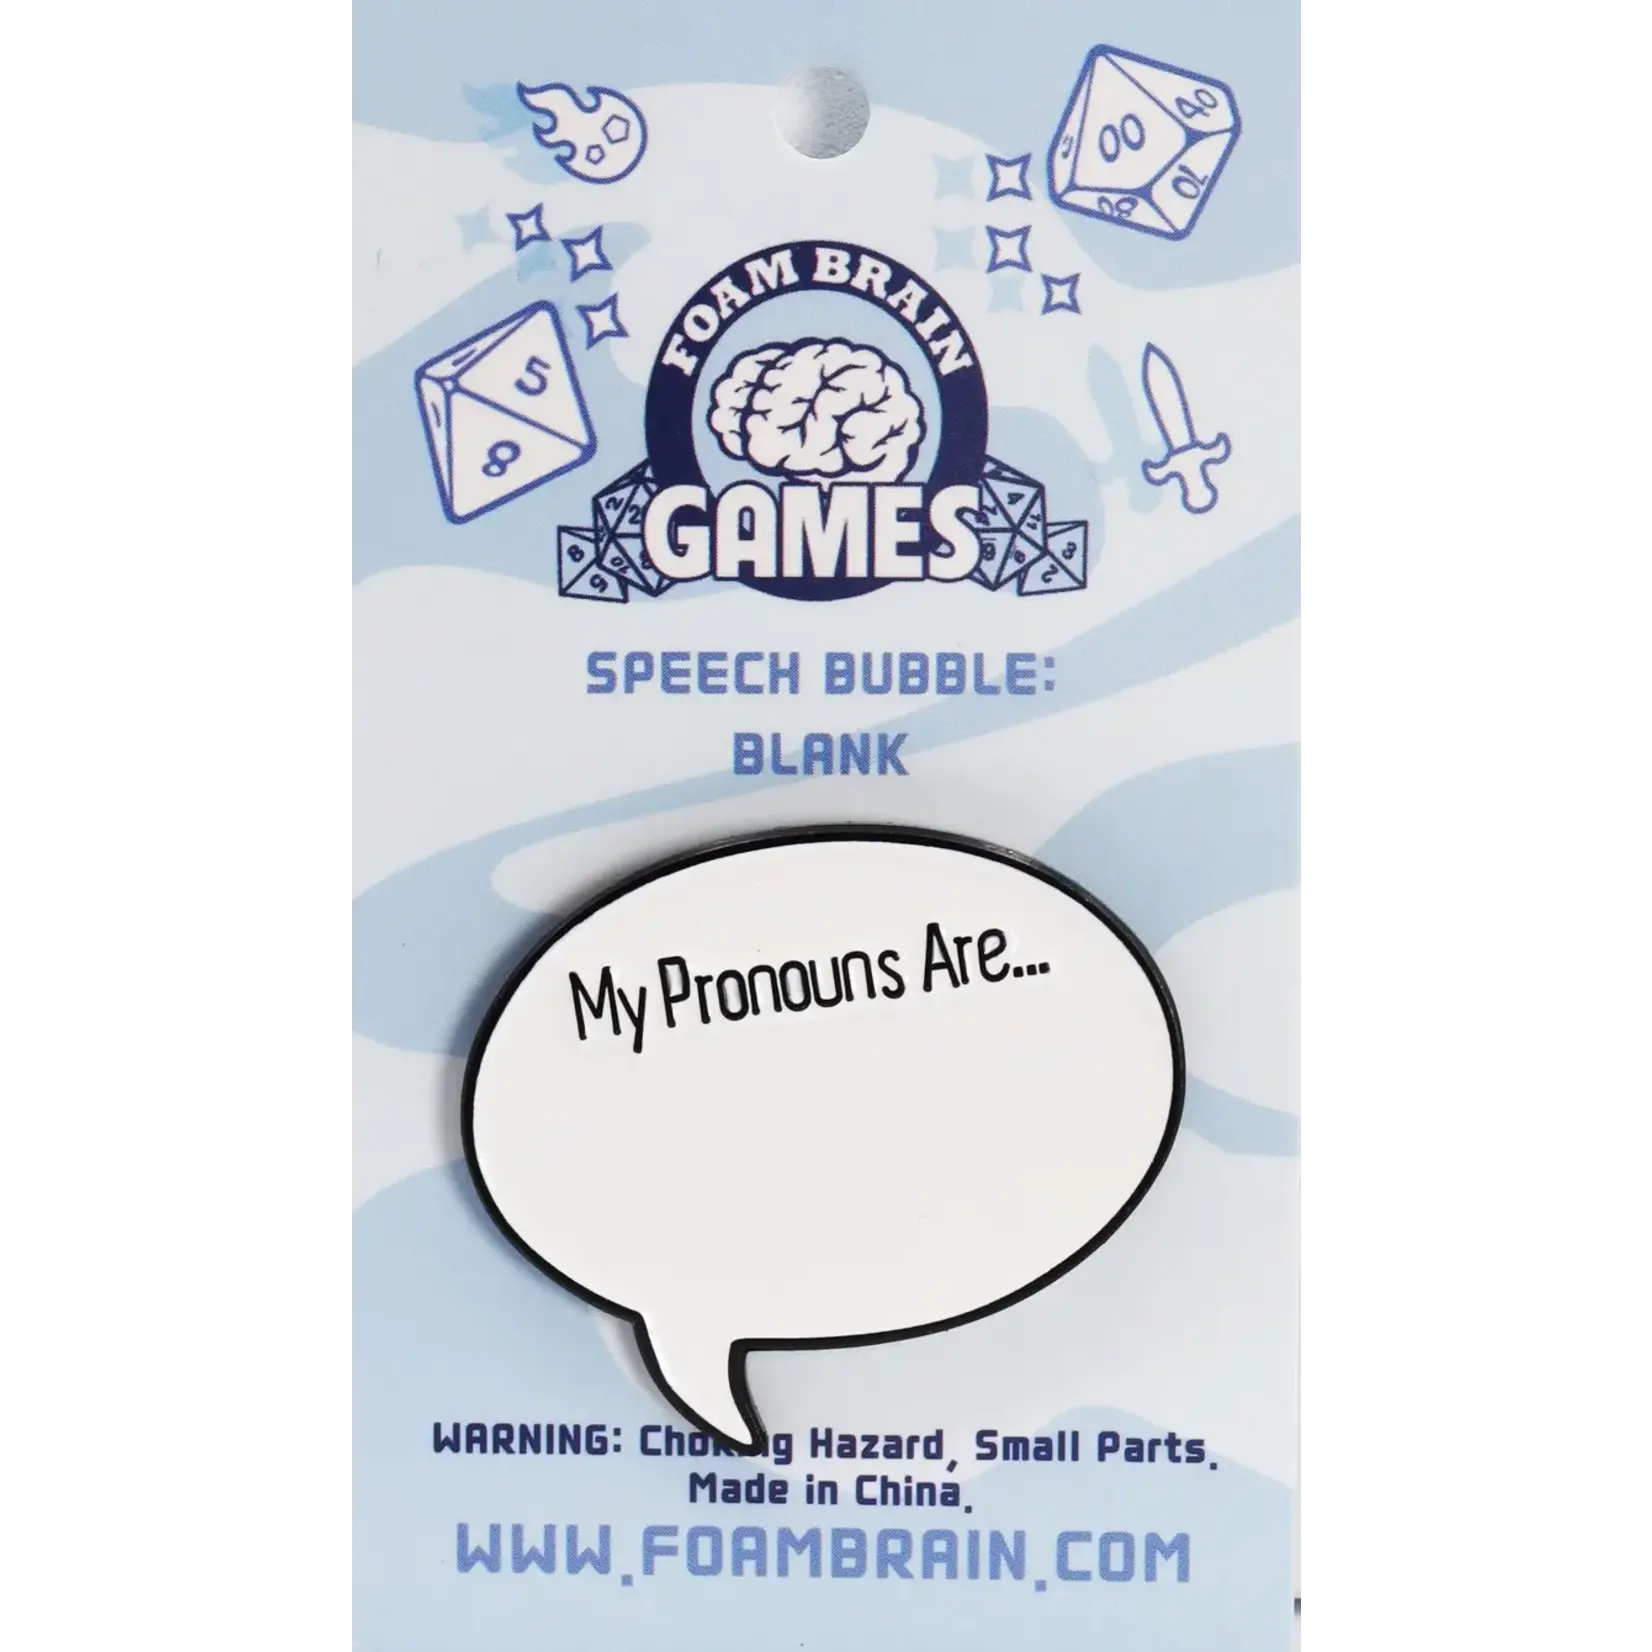 Foam Brain Pin: Speech Bubble – Blank, "My Pronouns Are"